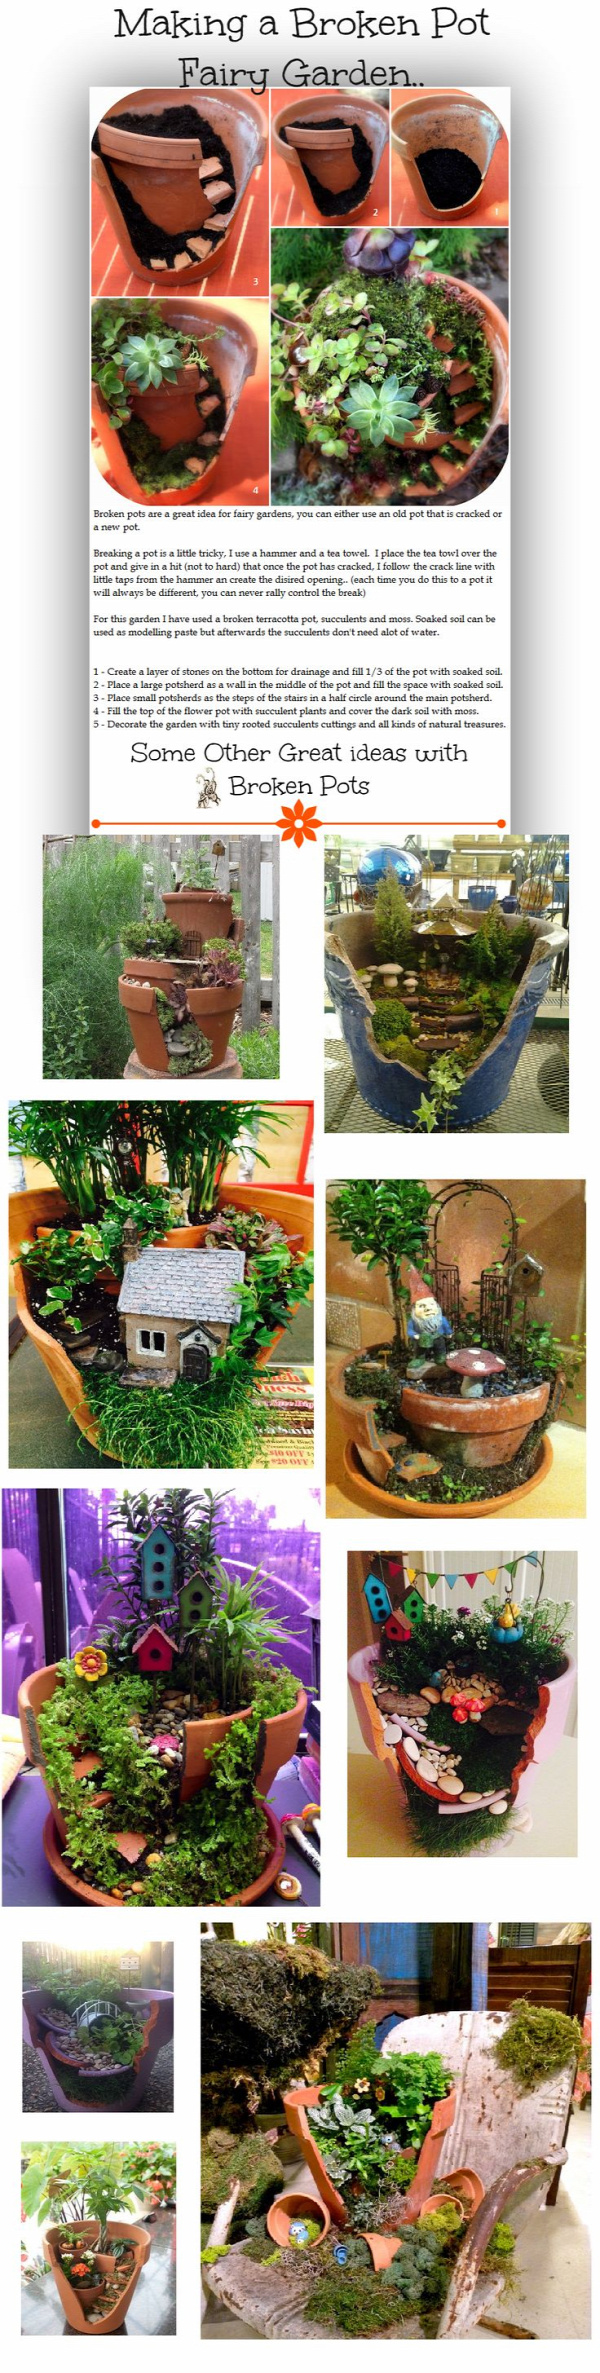 Making a Broken Pot Fairy Garden